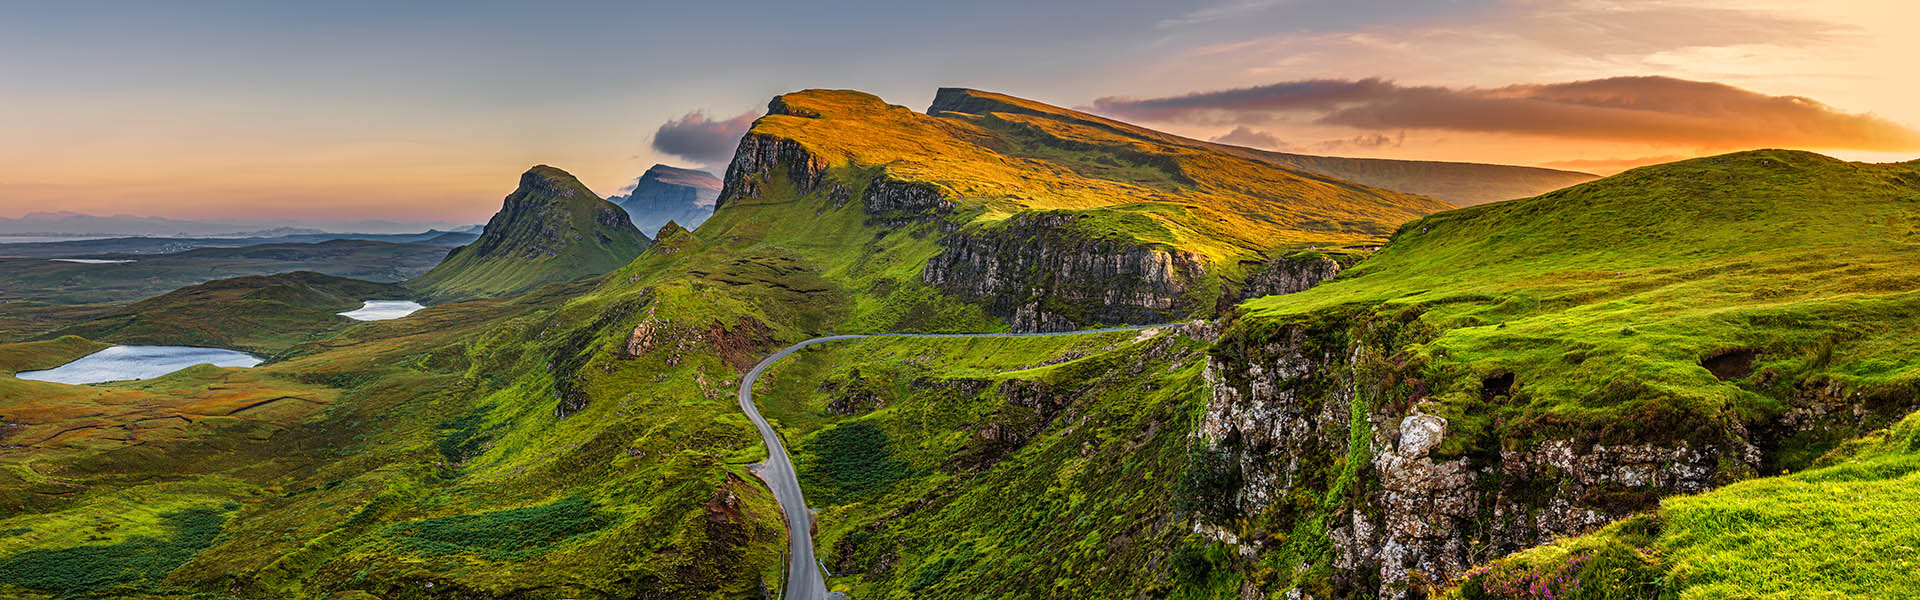 Les 5 plus belles routes d'Écosse - Alainn Tours